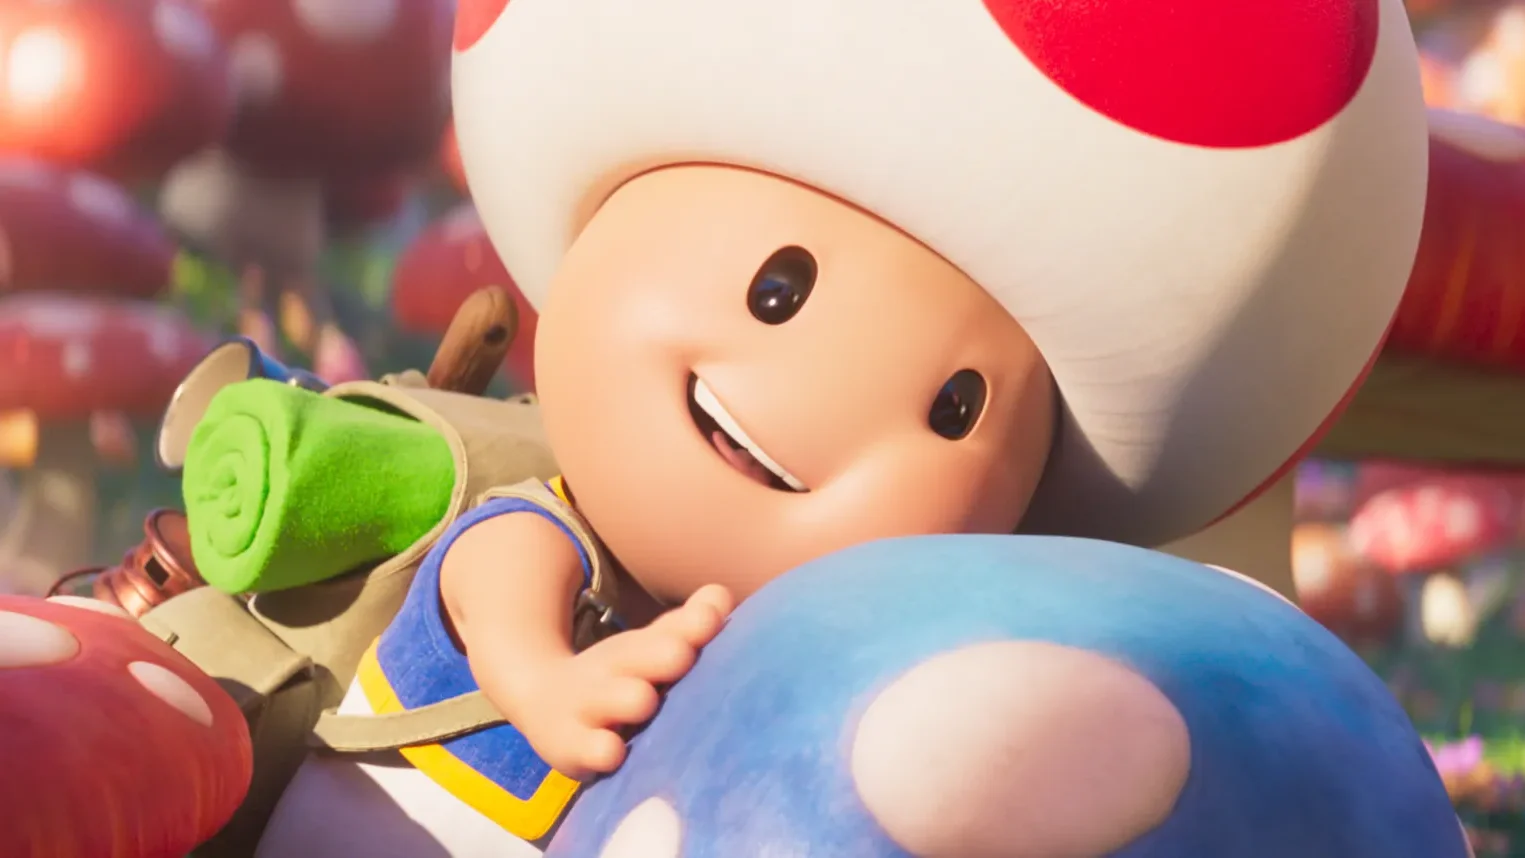 Review Phim Anh Em Super Mario: Làm mới kỷ niệm cùng Mario và Luigi